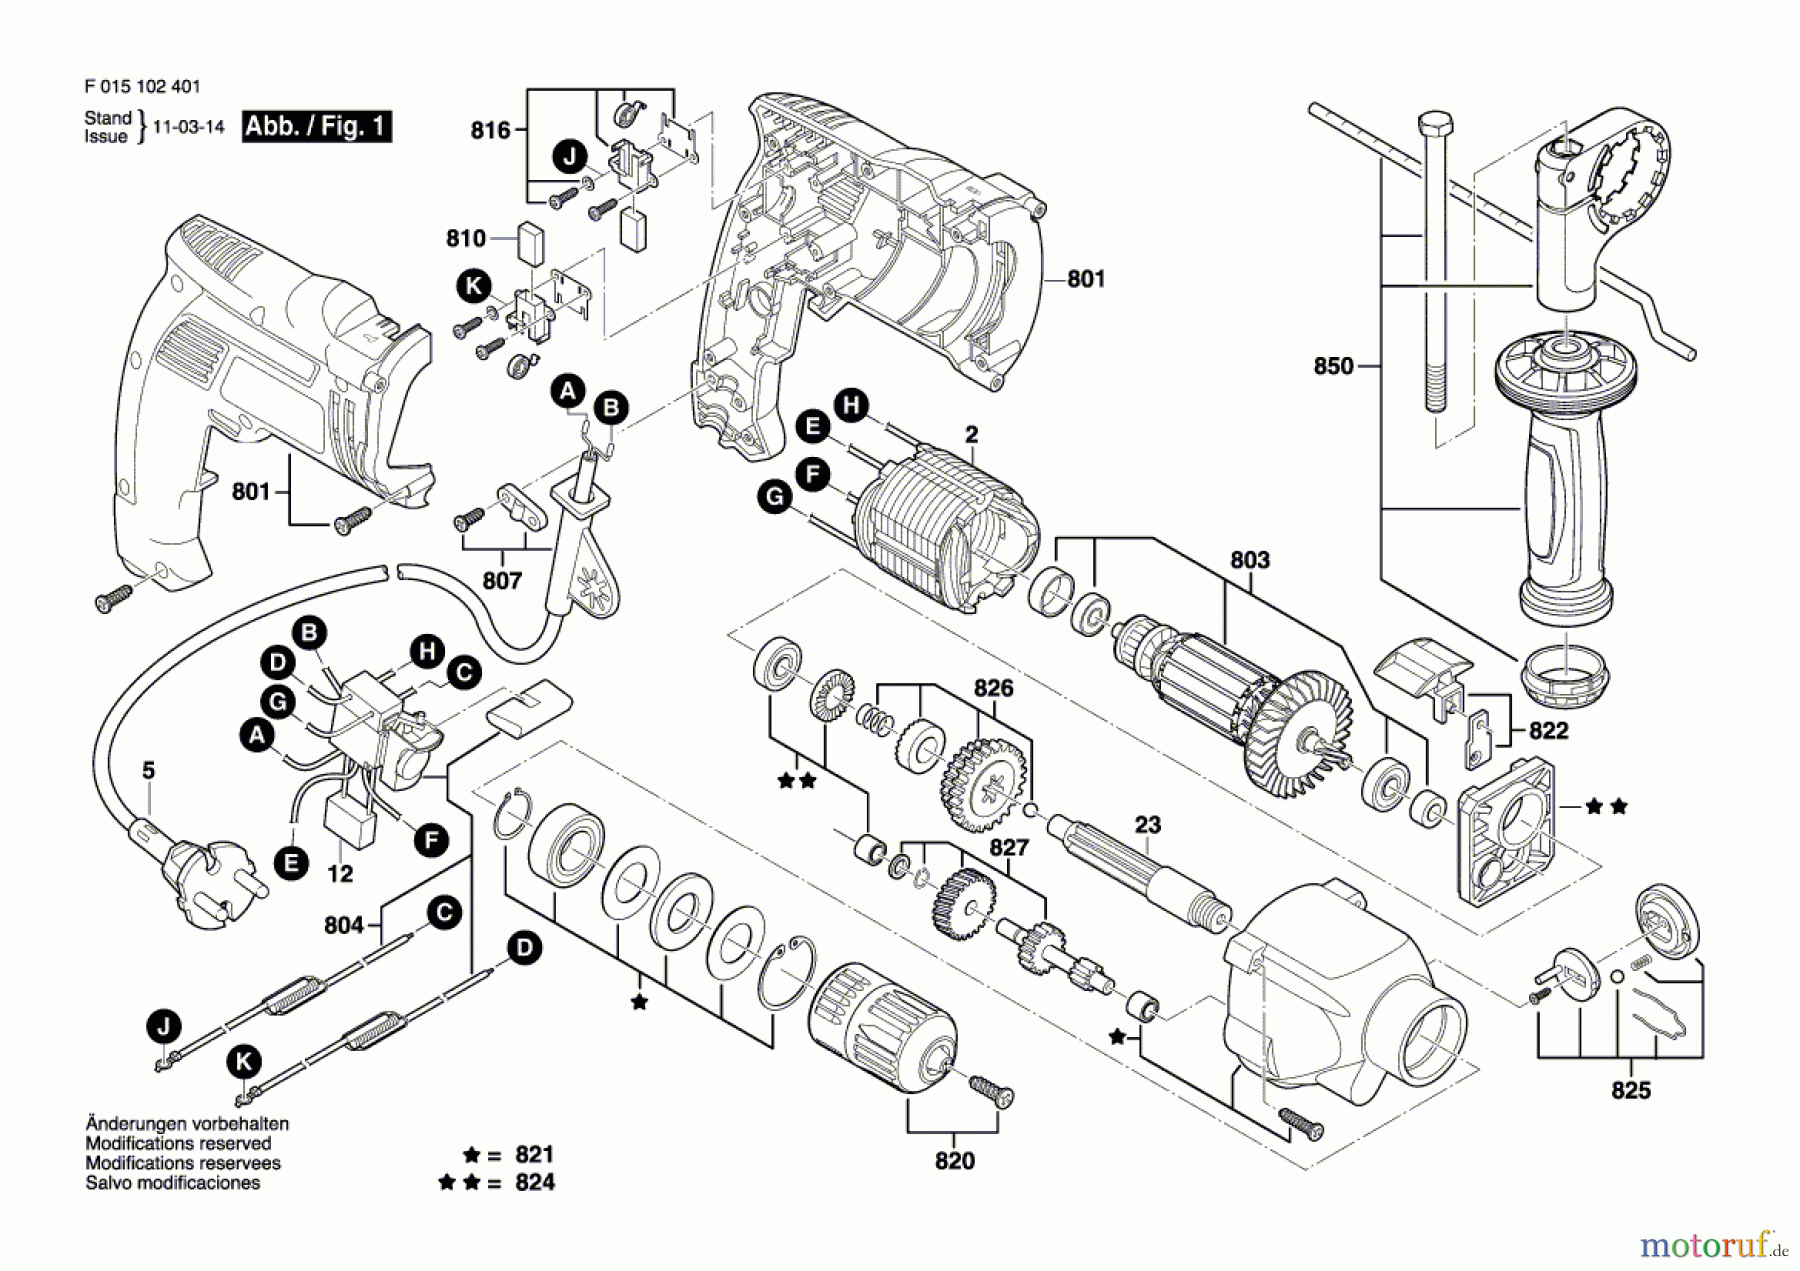  Bosch Werkzeug Schlagbohrmaschine 1023 Seite 1